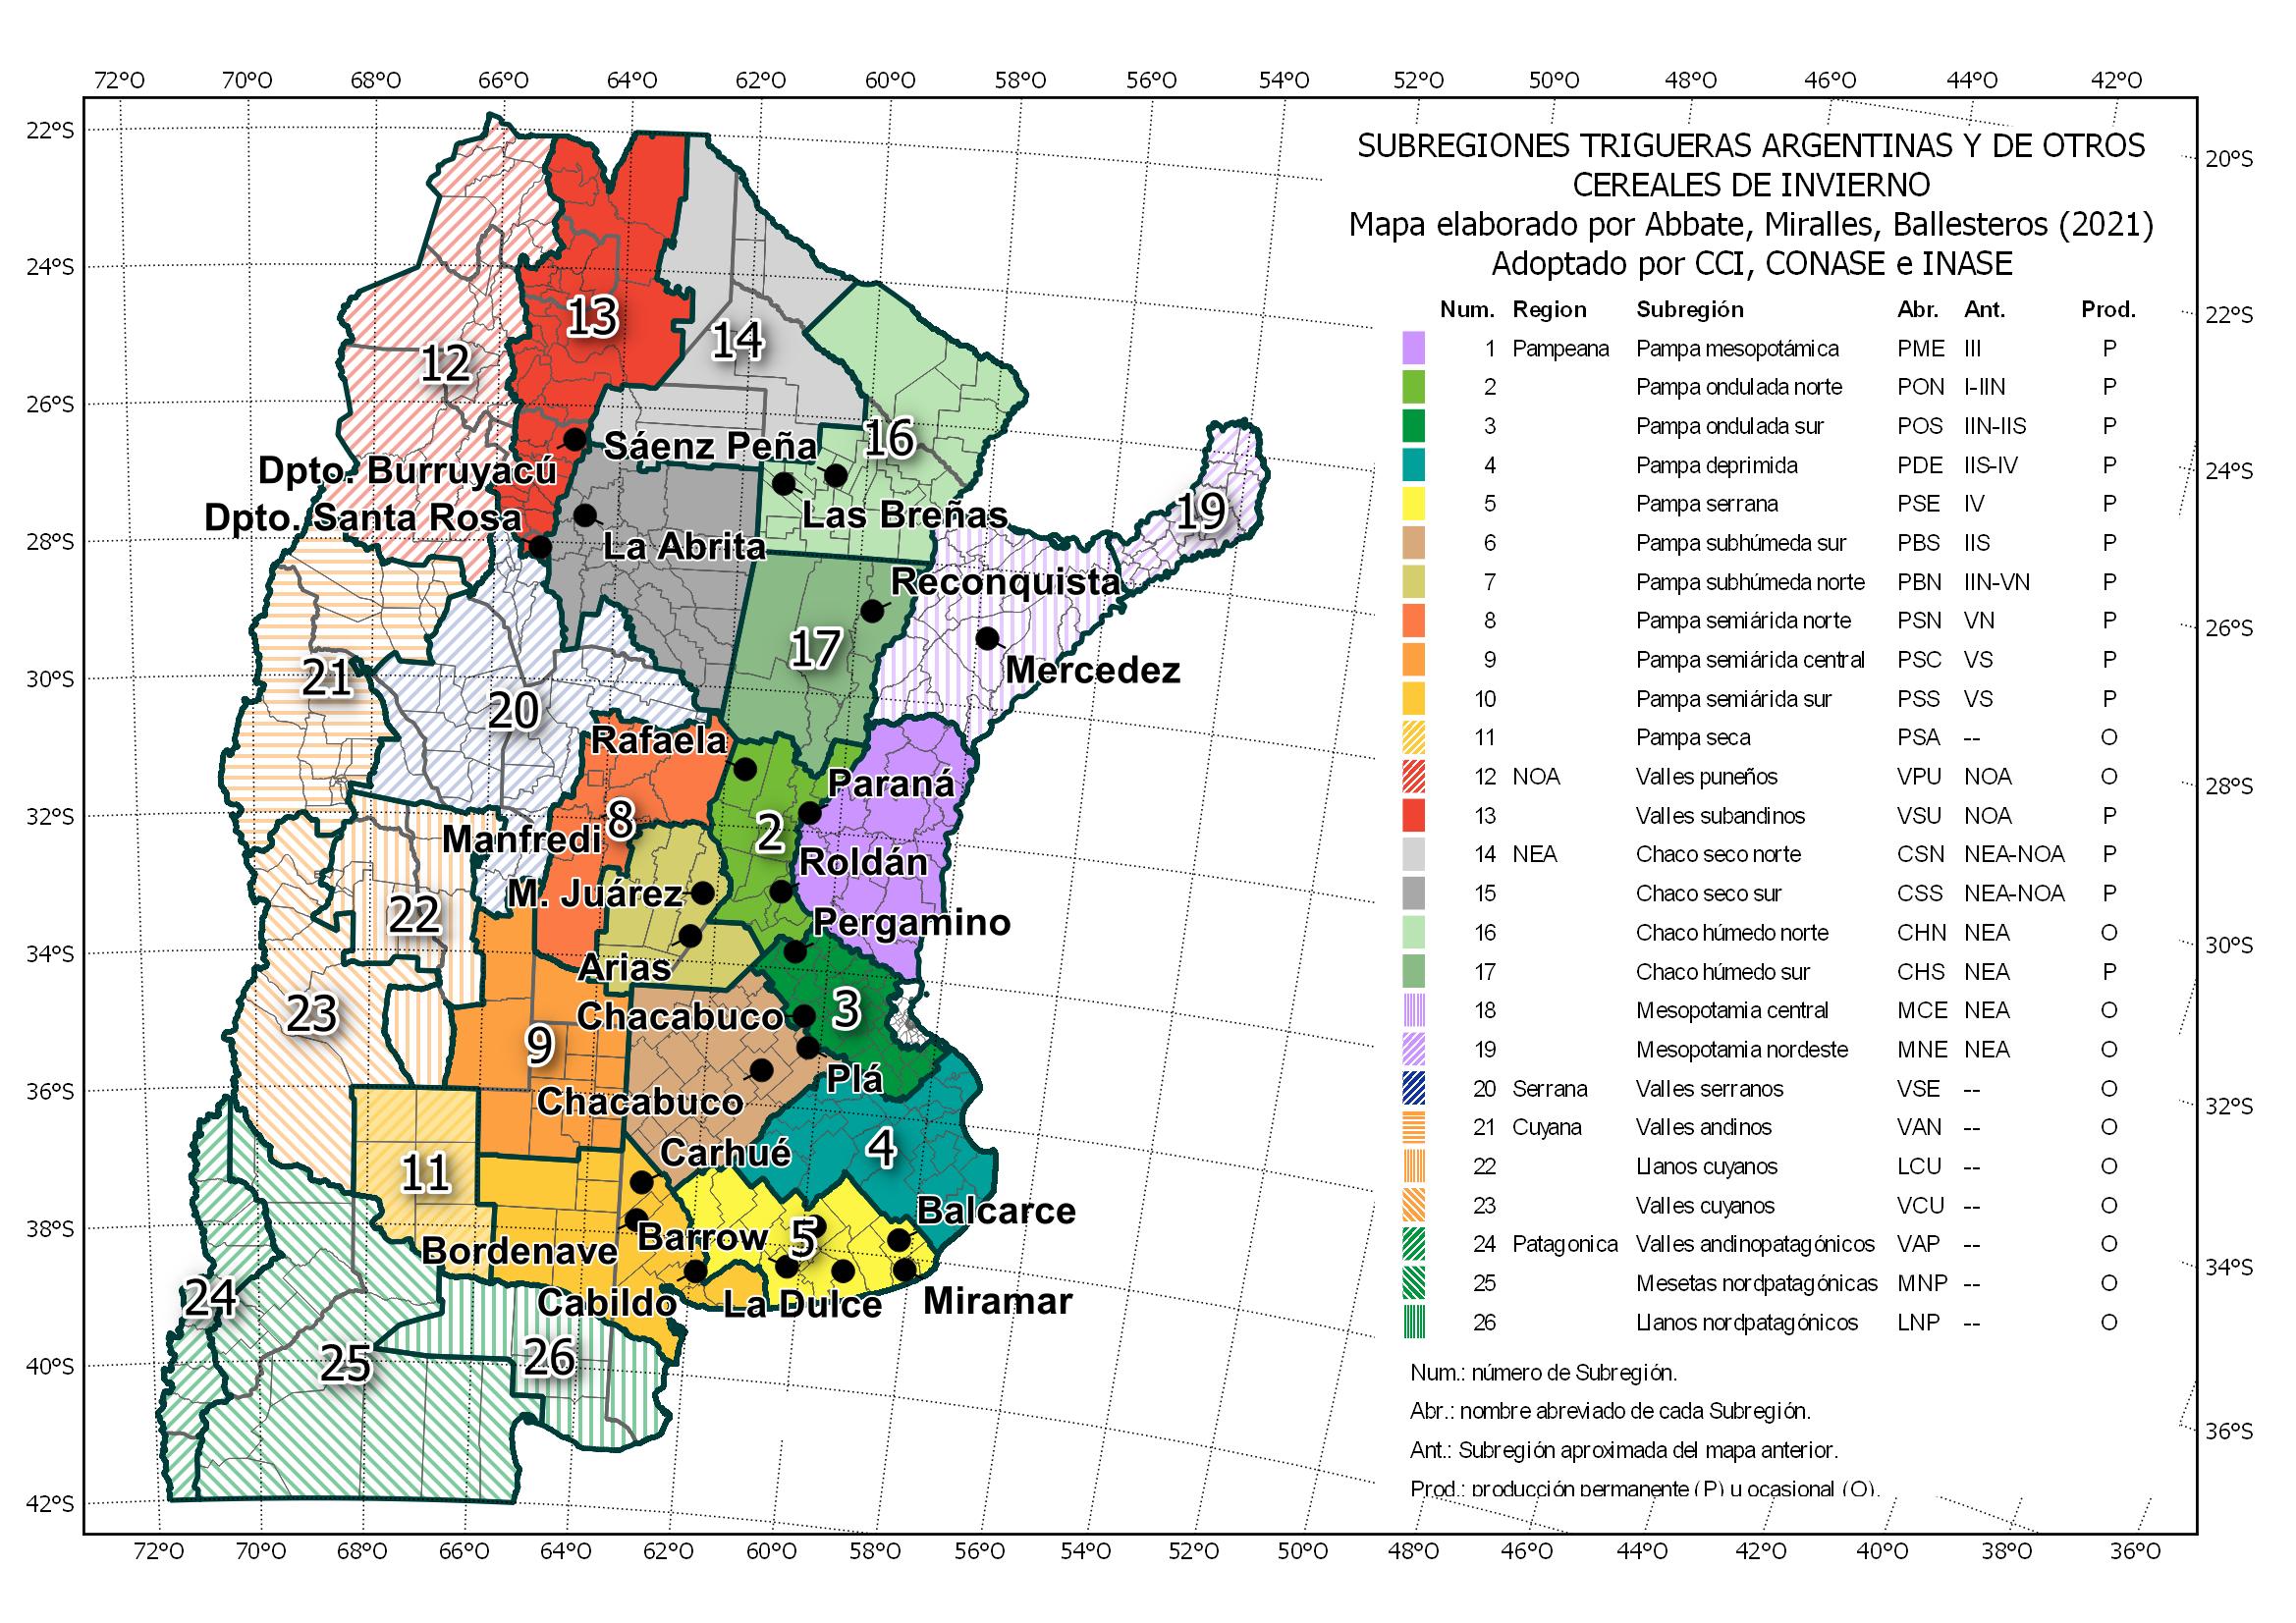 Mapa de las Subregiones trigueras argentinas